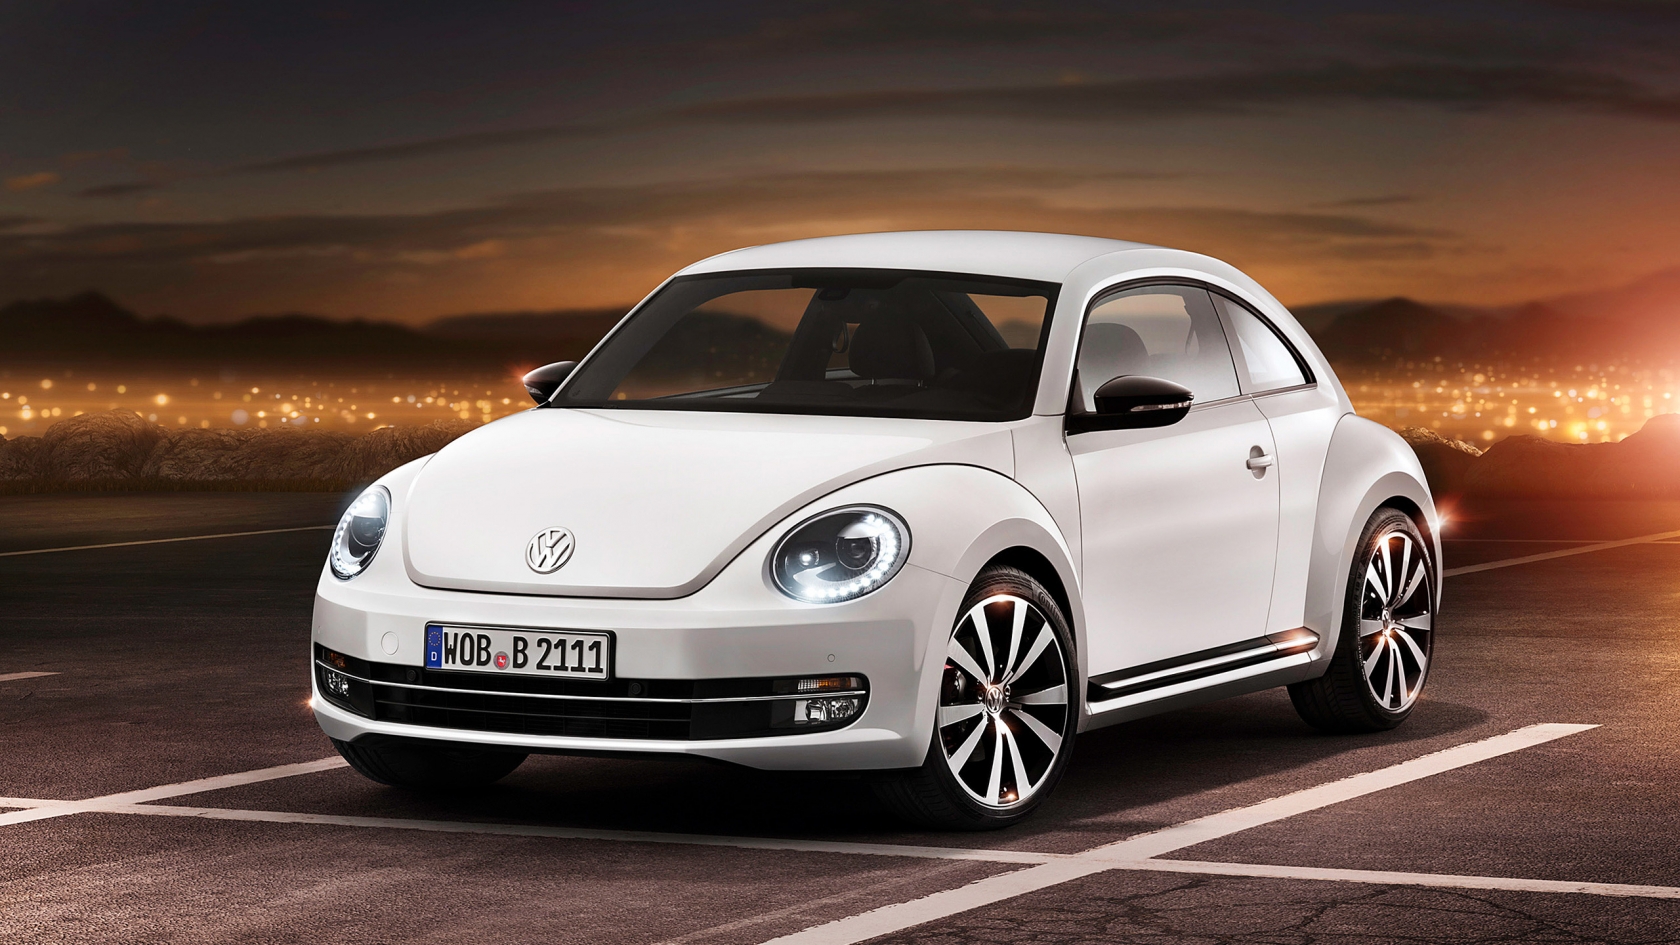 2012 Volkswagen Beetle for 1680 x 945 HDTV resolution